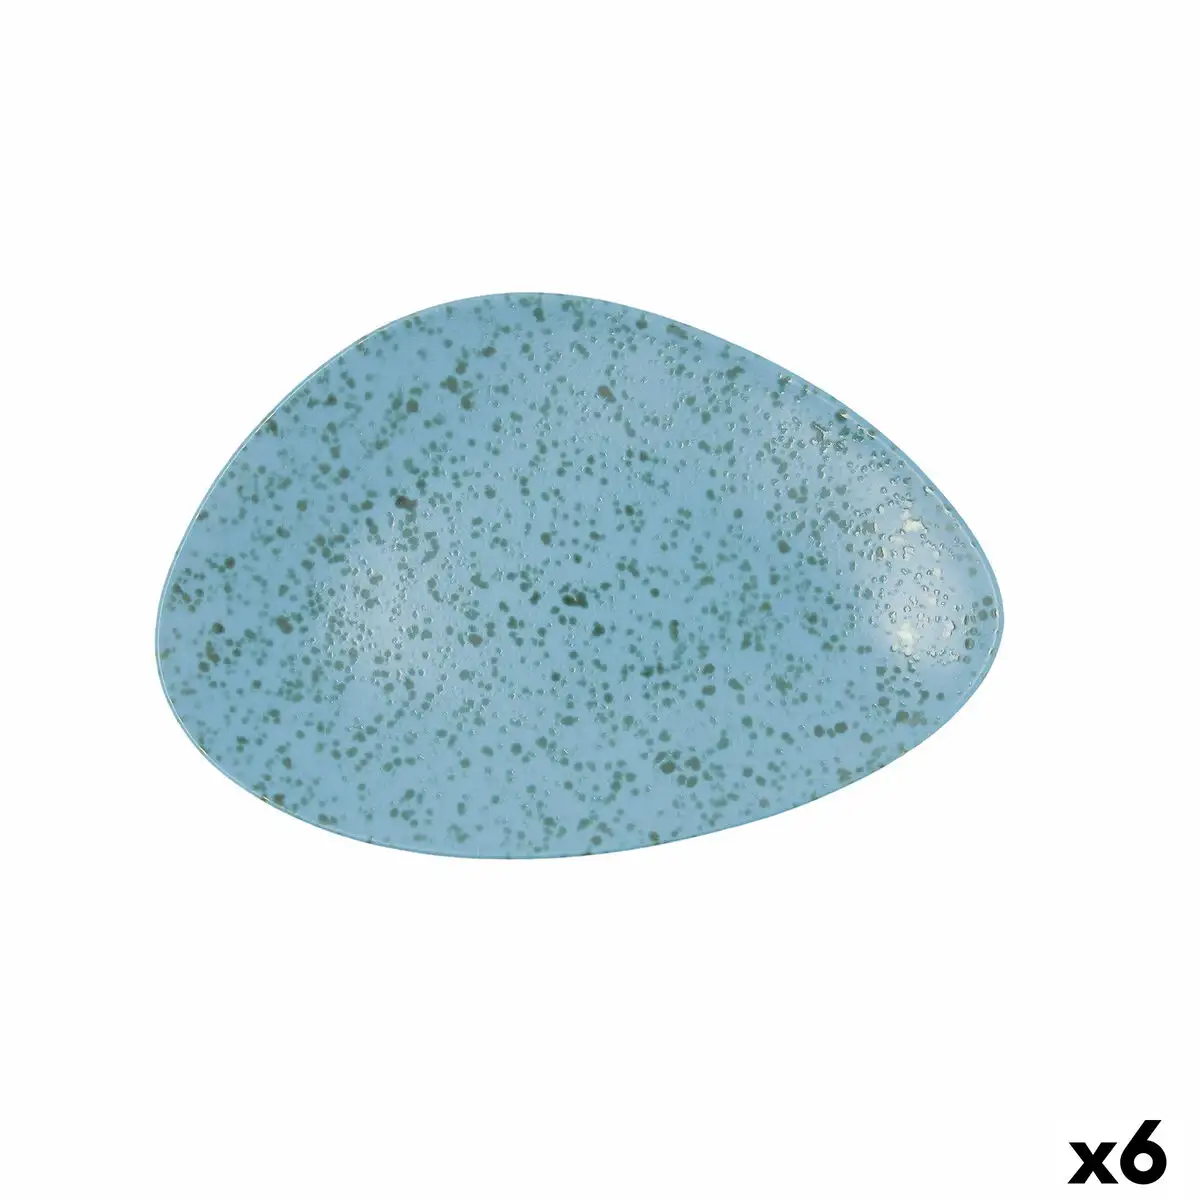 Assiette plate ariane oxide triangulaire ceramique bleu o 29 cm 6 unites _2452. Plongez dans l'Univers de DIAYTAR SENEGAL - Où la Qualité et la Diversité se rencontrent. Parcourez nos rayons virtuels pour trouver des produits répondant à tous les besoins, du confort de votre foyer.